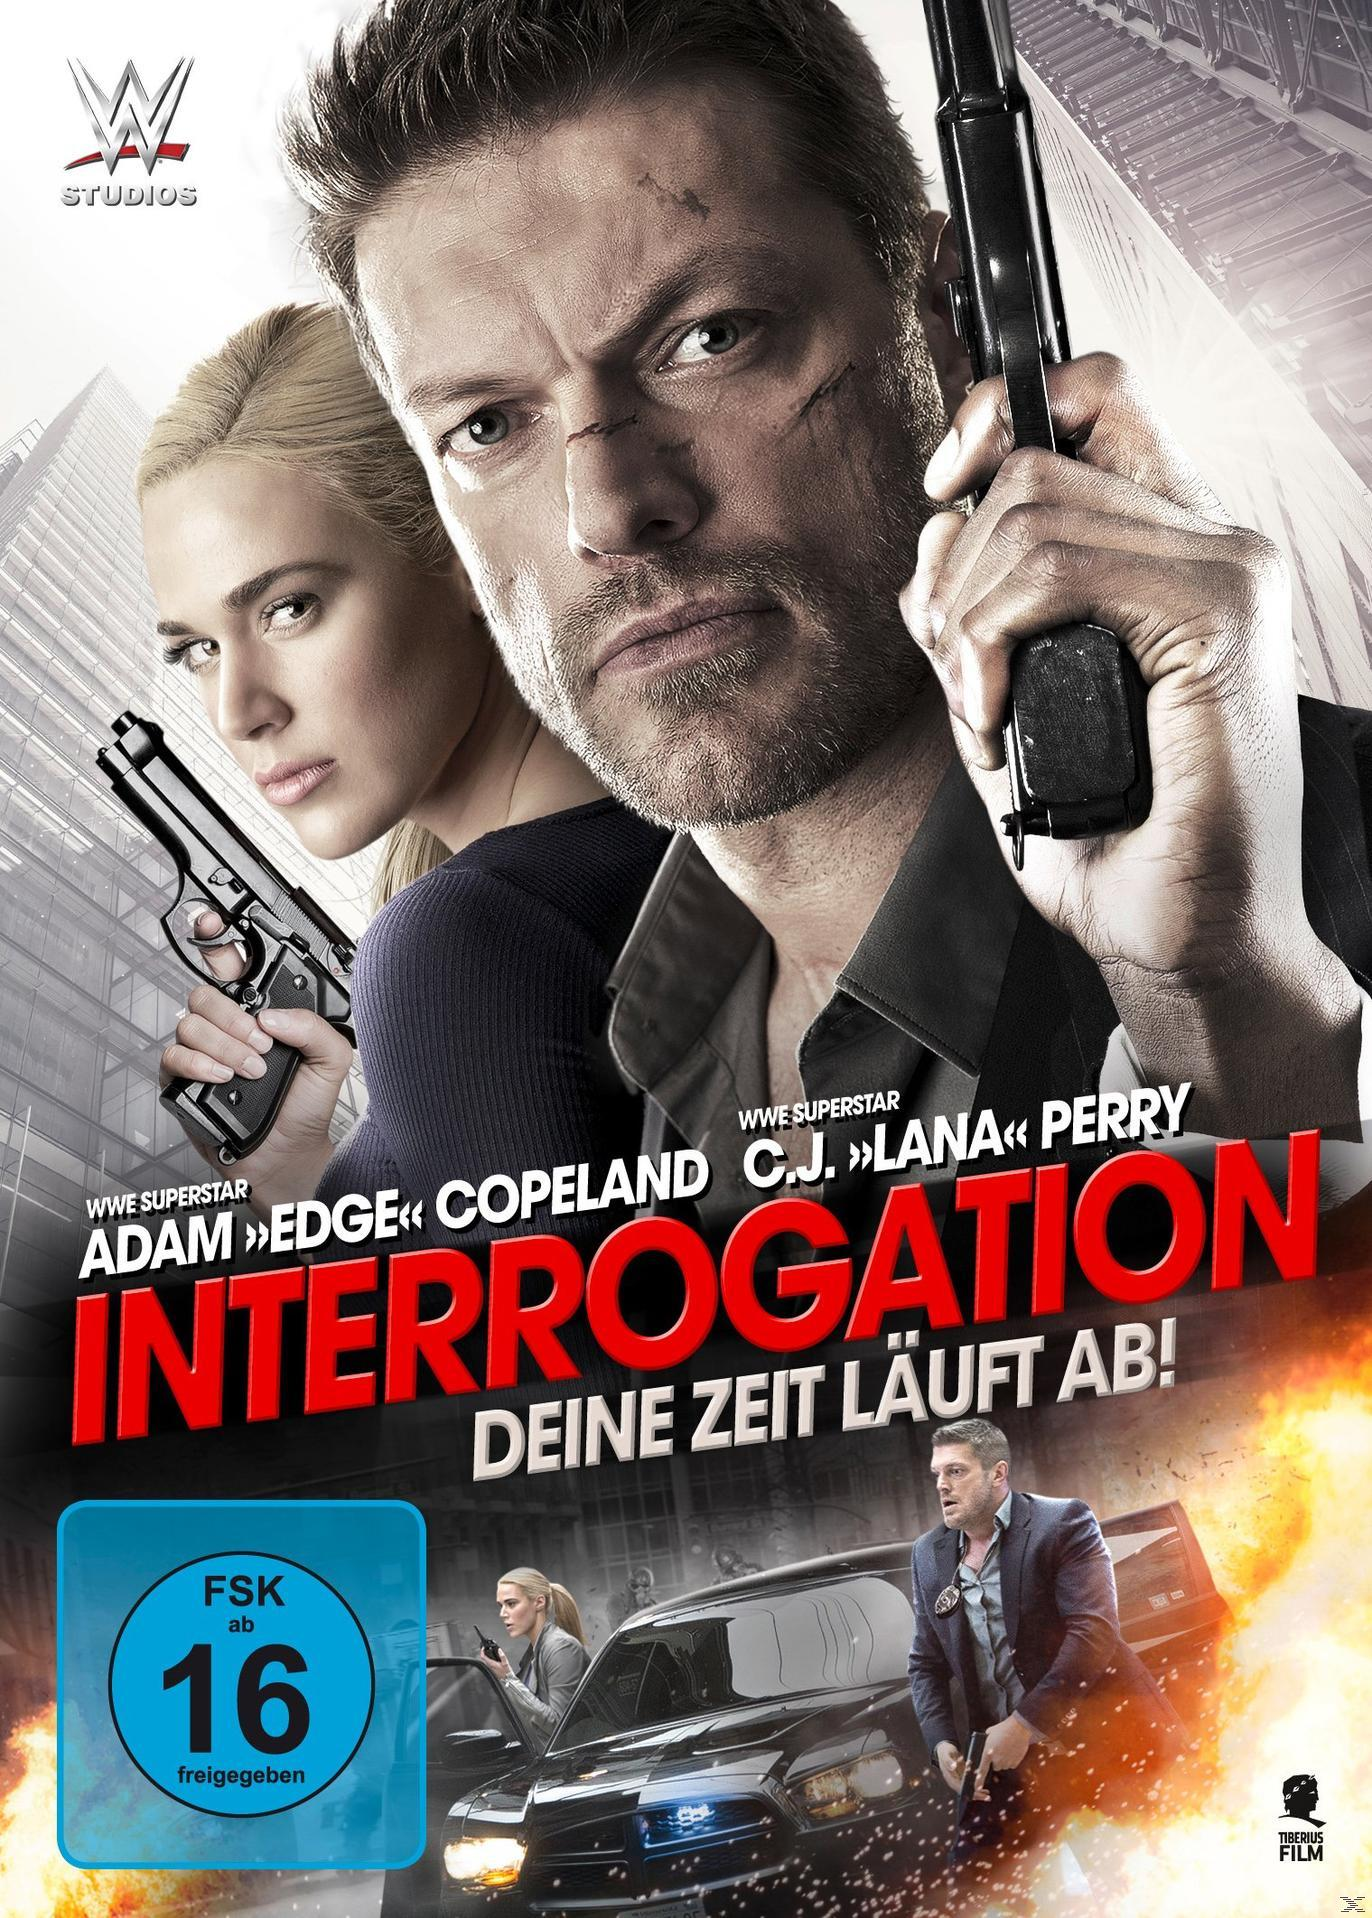 Interrogation - Deine Zeit ab! läuft DVD